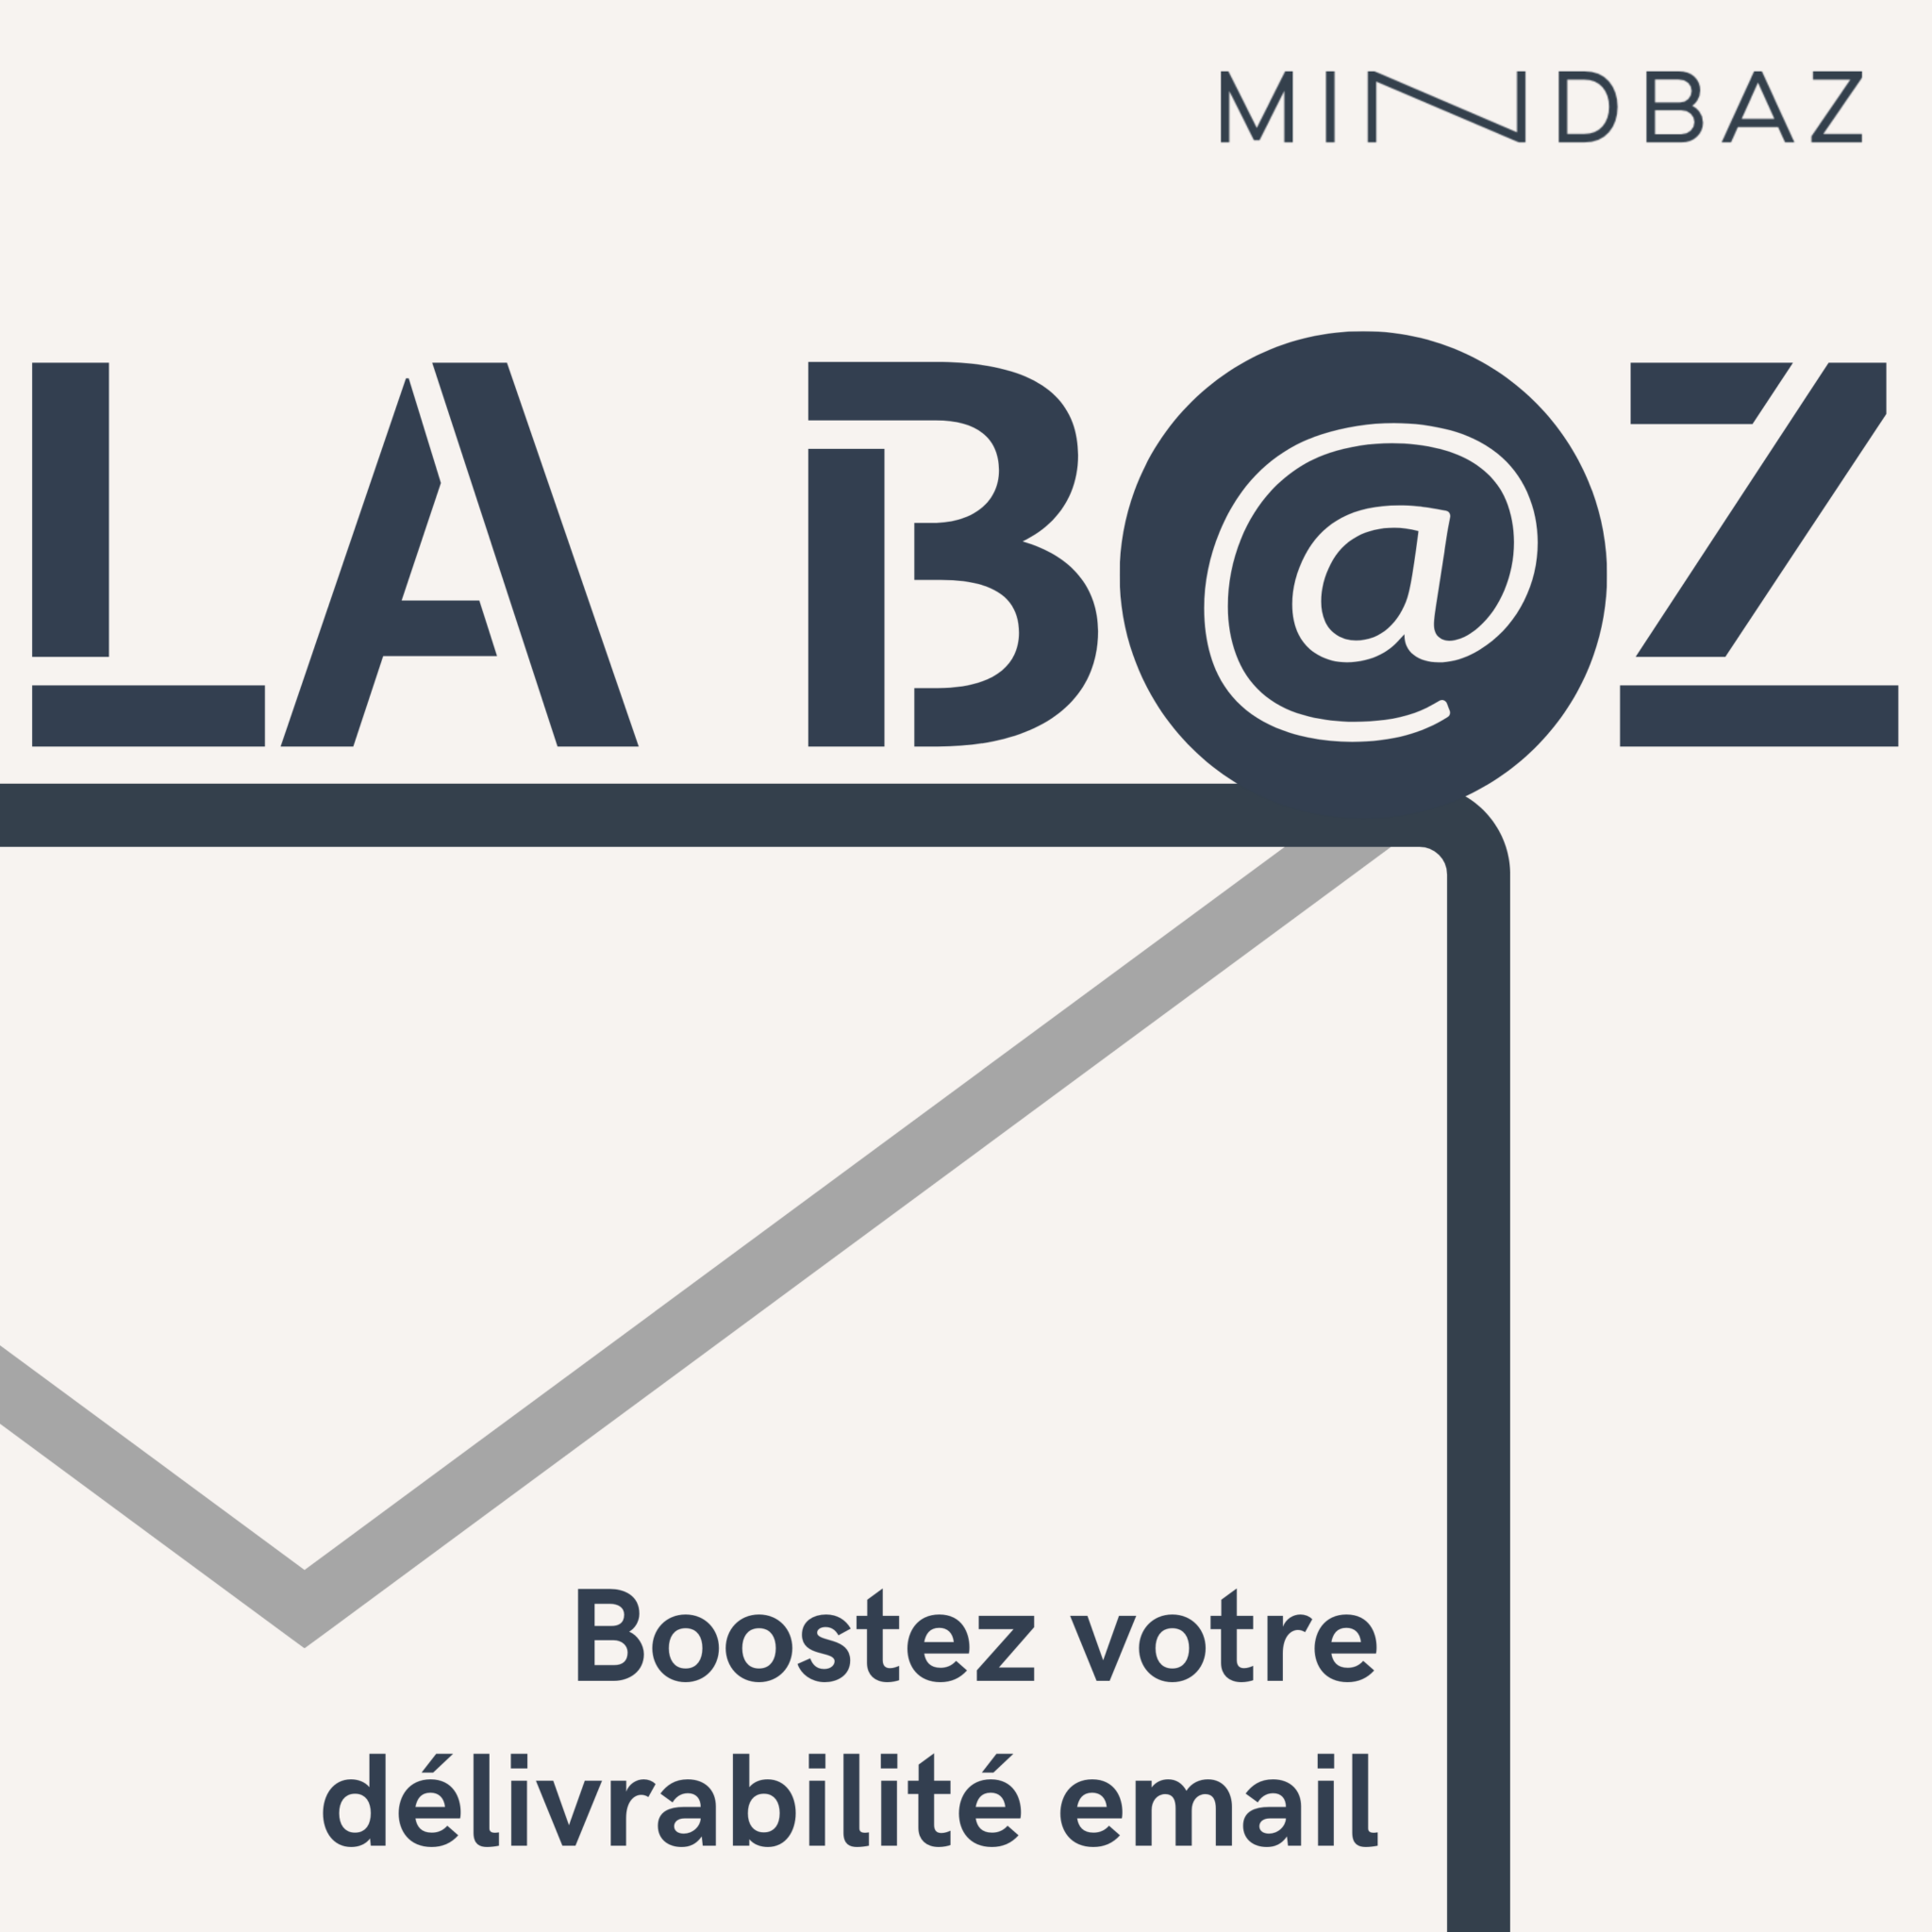 logo_la_baz_podcast_email_delivrabilite_saison_2